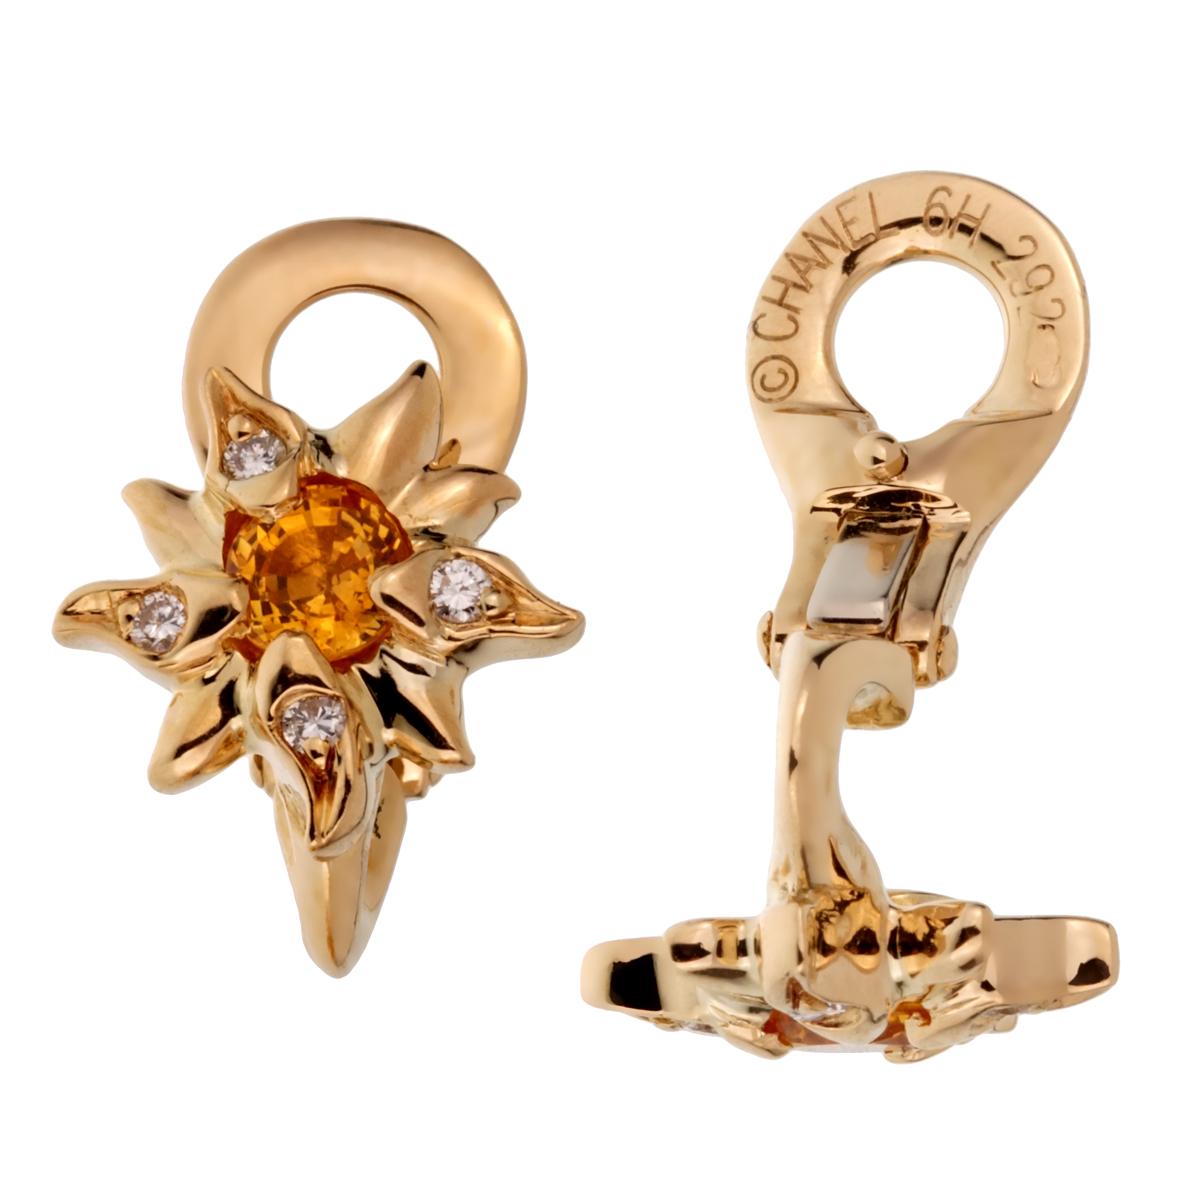 Schicke Chanel Comete Ohrringe mit gelben Saphiren und runden Diamanten im Brillantschliff aus 18 Karat Gelbgold.

Ohrring Breite: .49